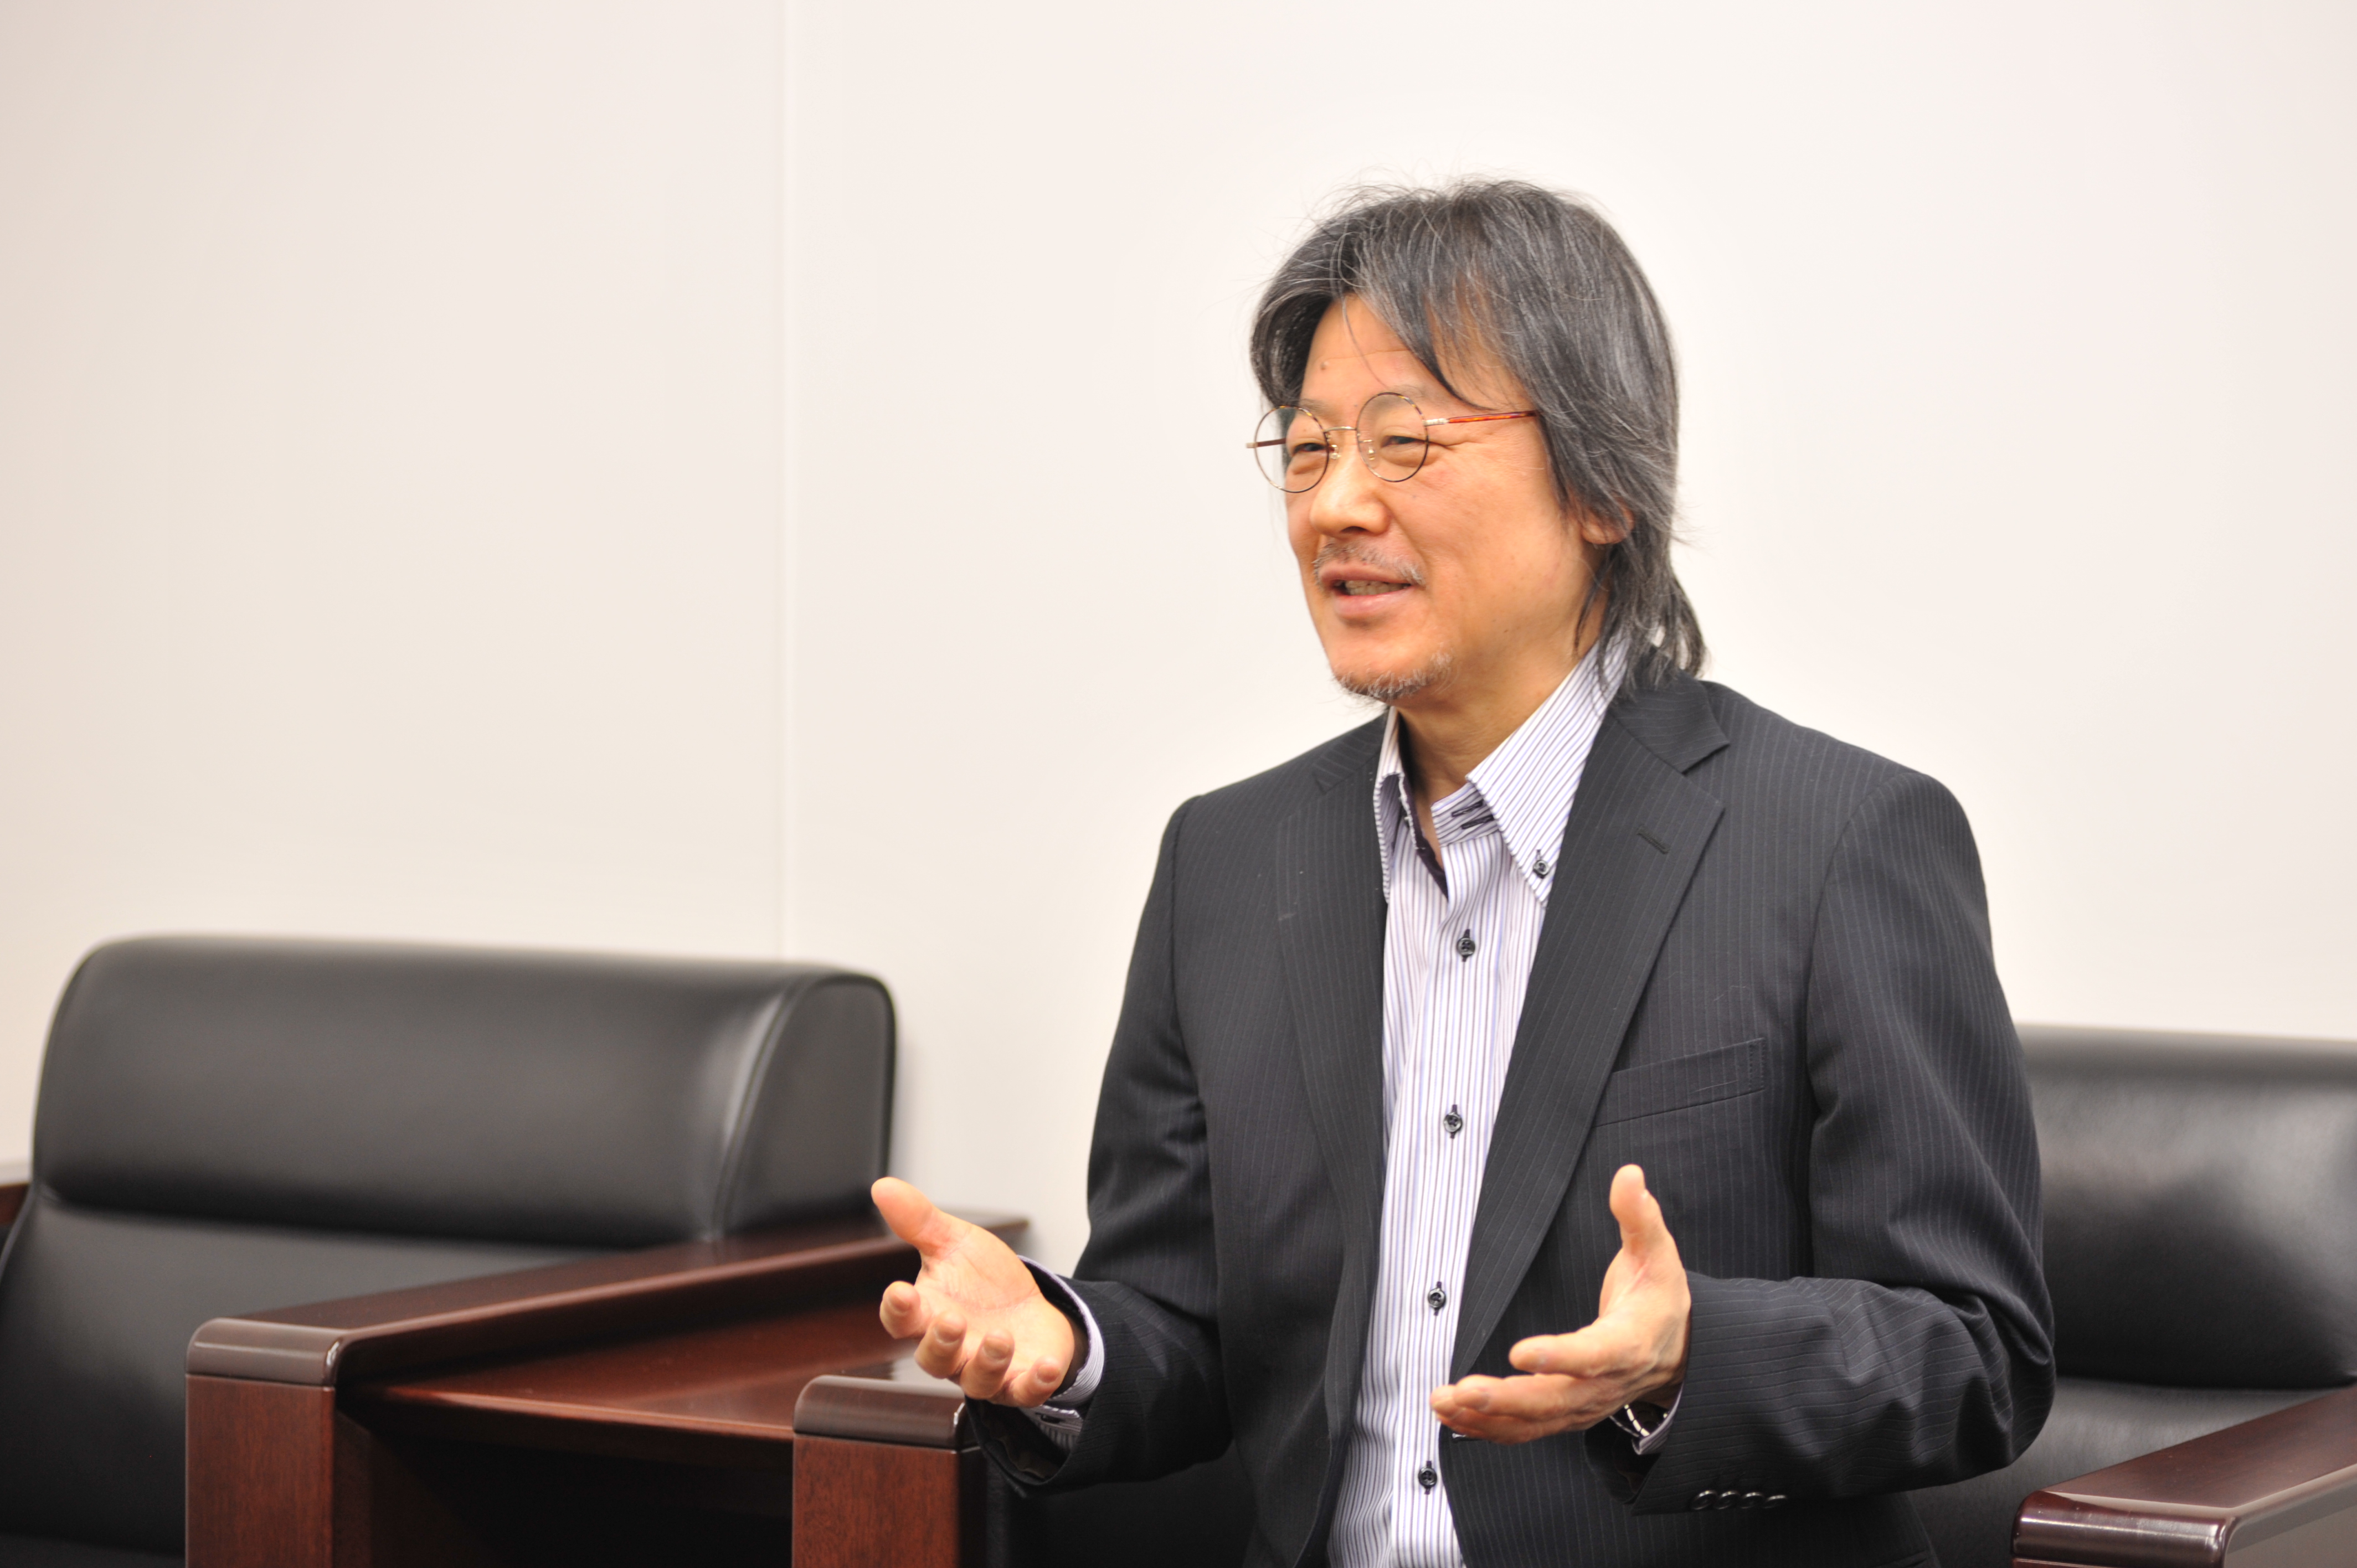 代表取締役社長　抱 厚志氏
1994年9月に同社を創業し、現在まで同社の成長を牽引してきた。